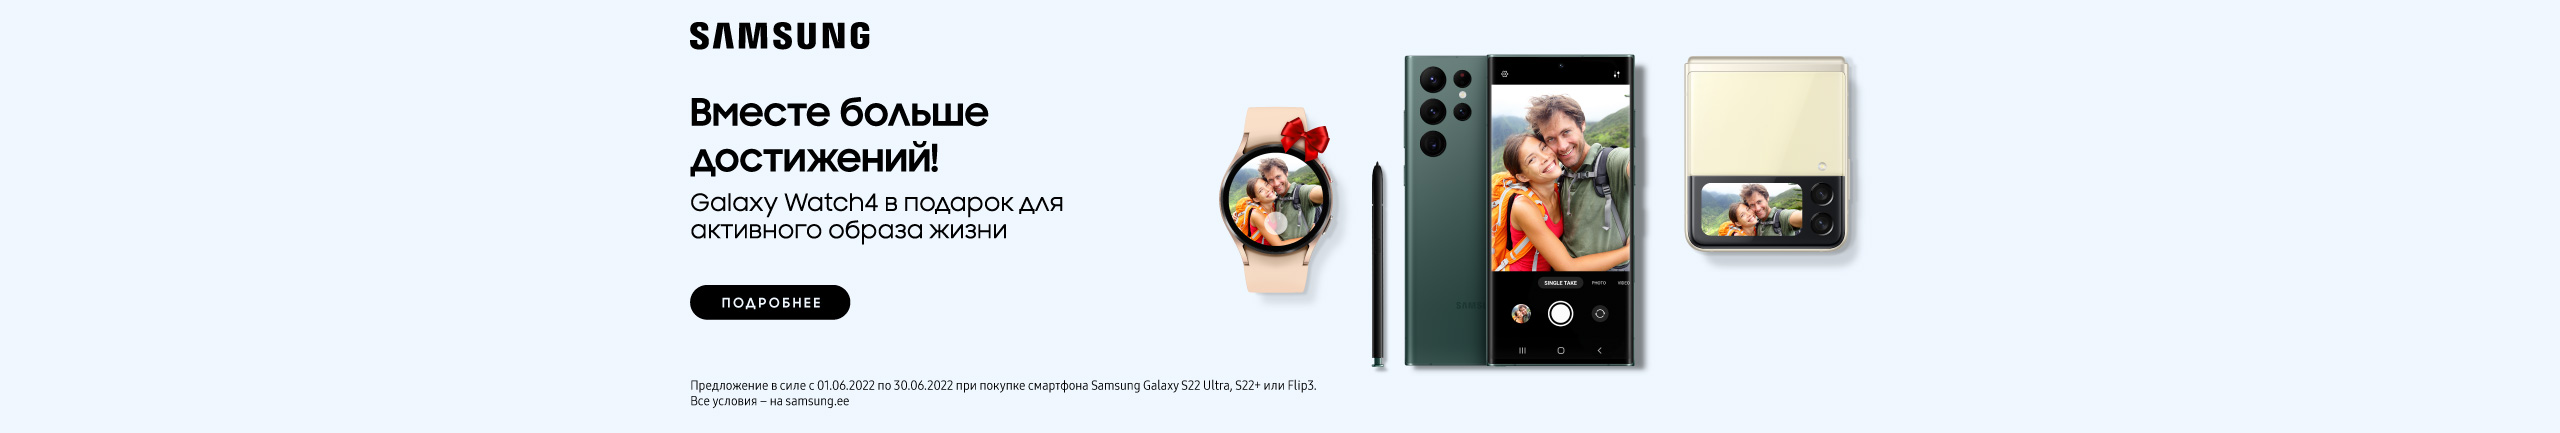 Купите смартфон Samsung S22+, S22 Ultra, Flip 5G или Fold 5G и получите в подарок Galaxy Watch 4!